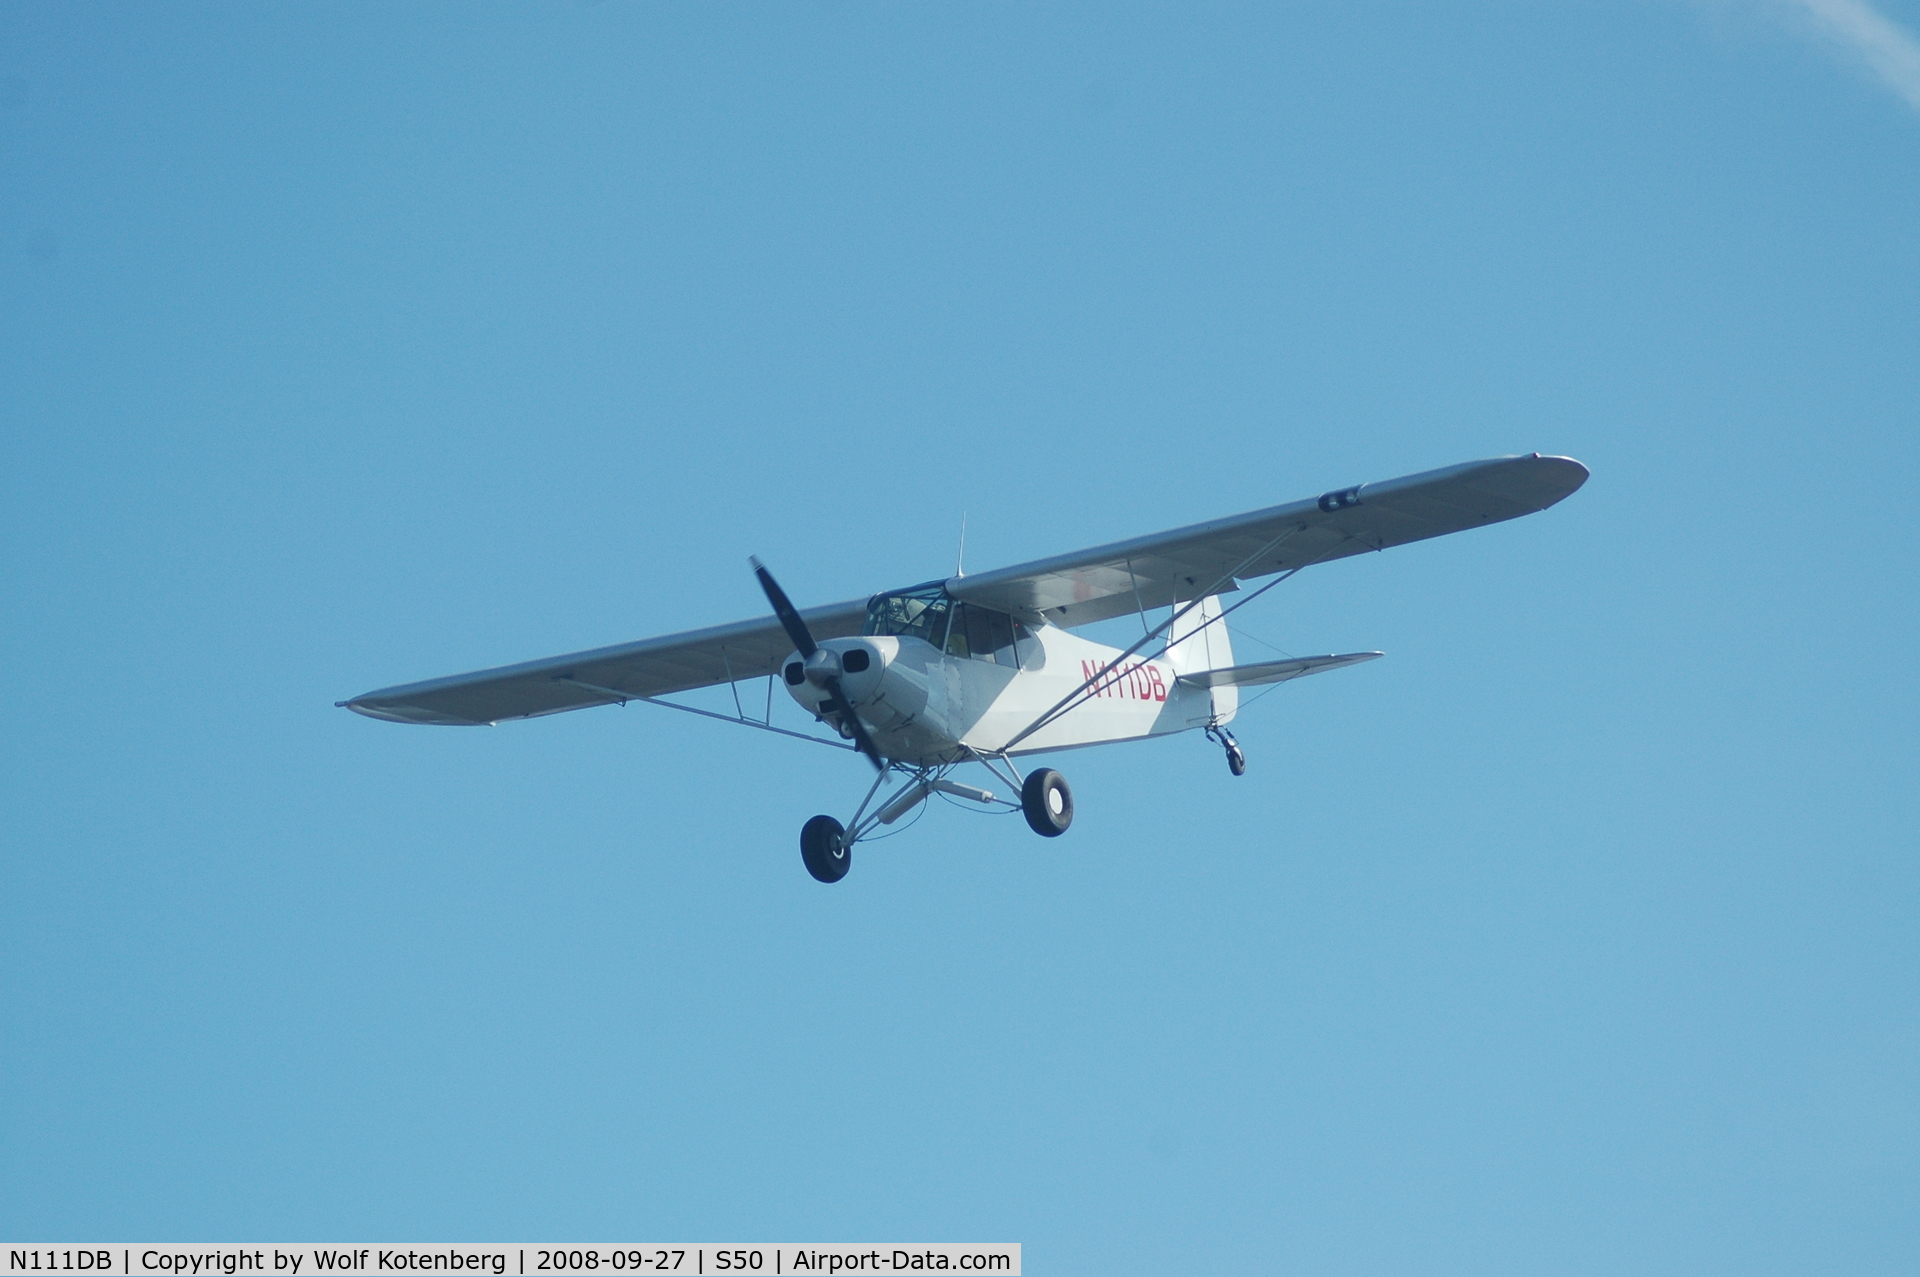 N111DB, 1953 Piper PA-18-135 Super Cub C/N 18-3682, on final